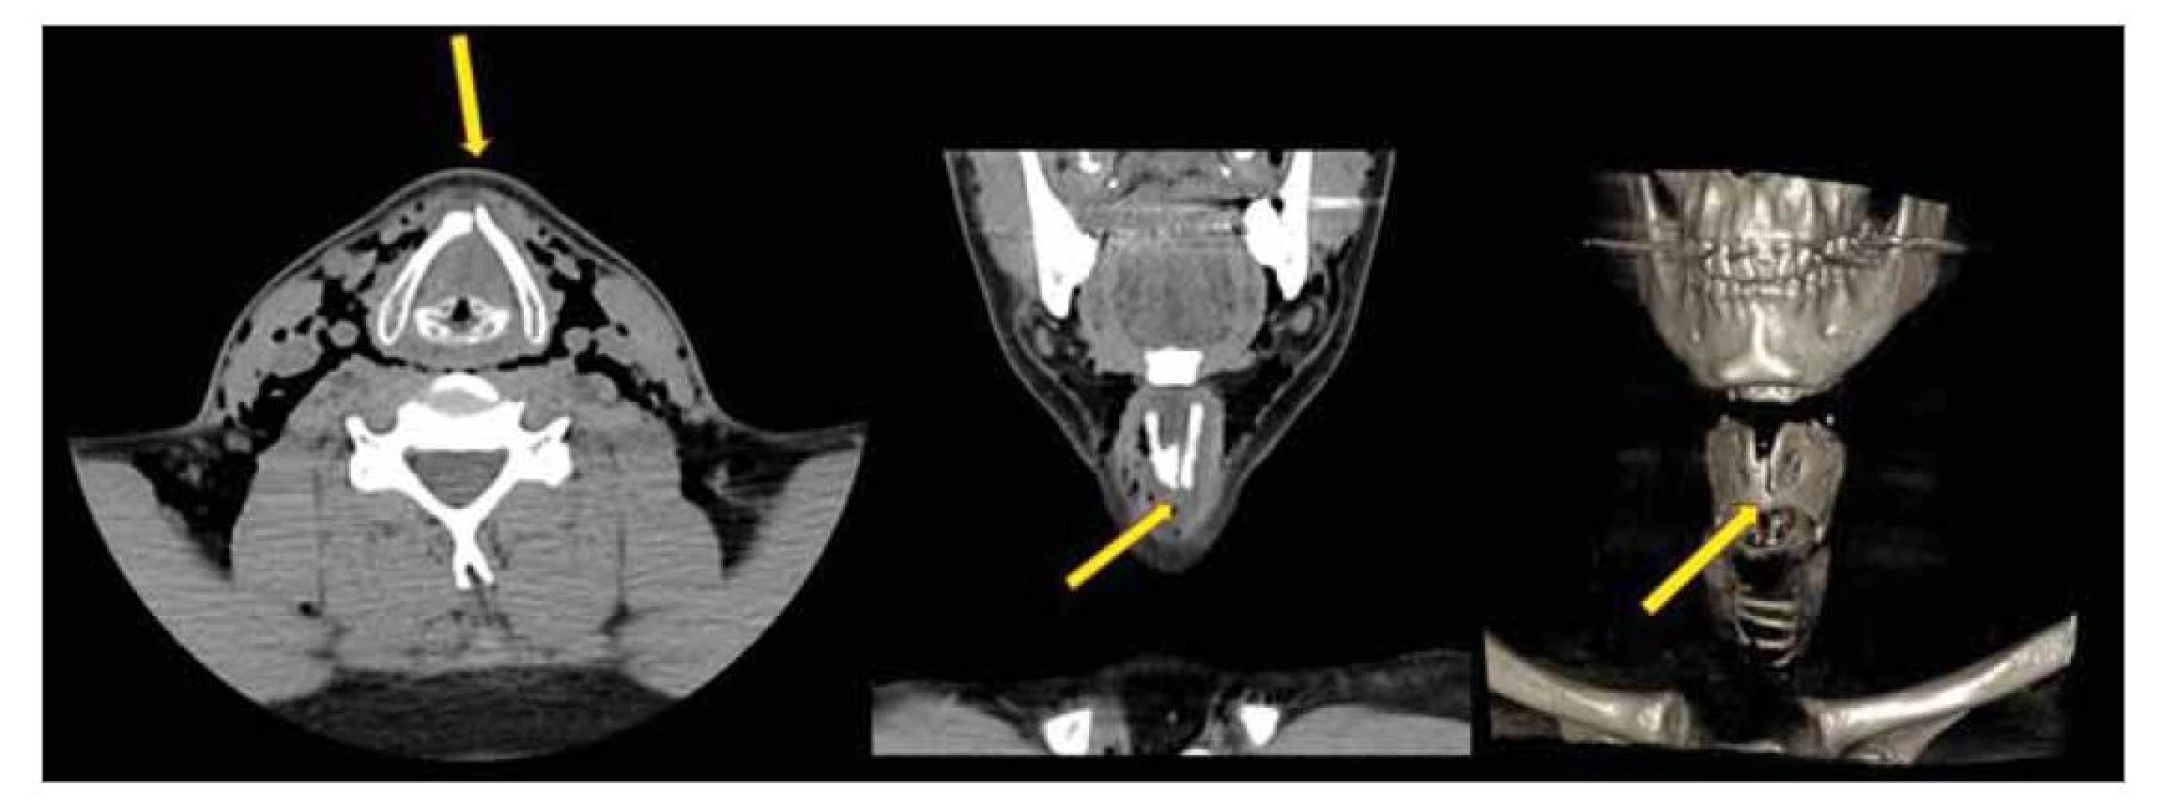 Kazuistika 4 – CT krku nativní, axiální rovina, koronální rovina, 3D rekonstrukce. Neúplná zlomenina chrupavky
štítné vlevo, podkožní emfyzém.<br>
Fig. 2. Case report 4 – CT of the neck native, axial plane, coronaly plane, 3D reconstruction. Incomplete fracture of the left
thyroid cartilage, subcutaneous emphysema.